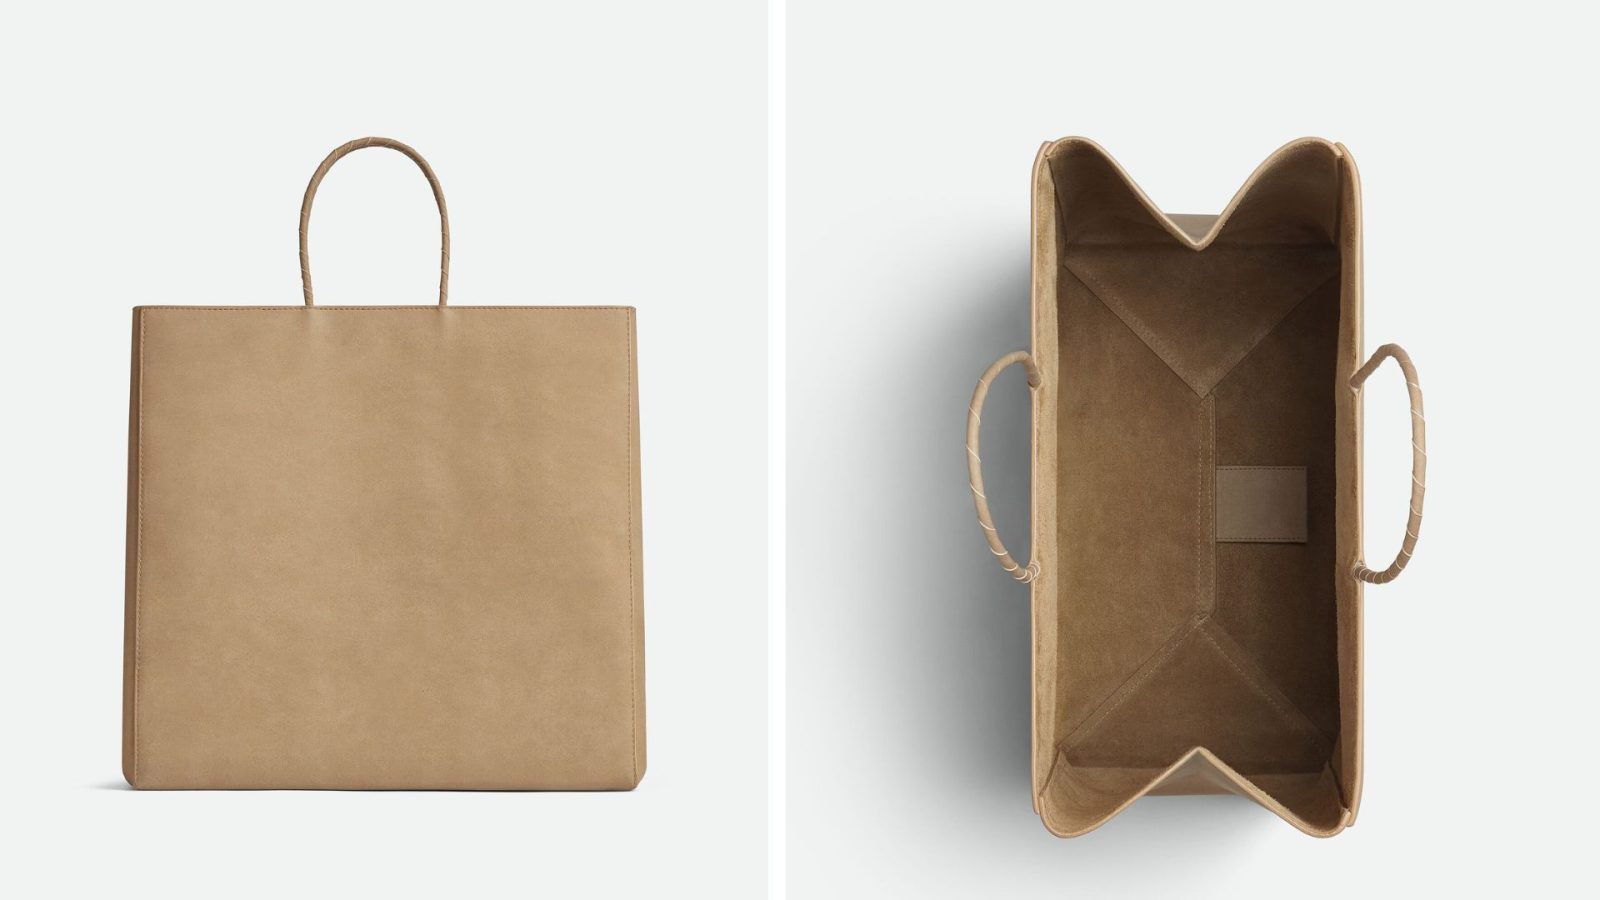 Authentic Louis Vuitton paper bag. Dimensions are